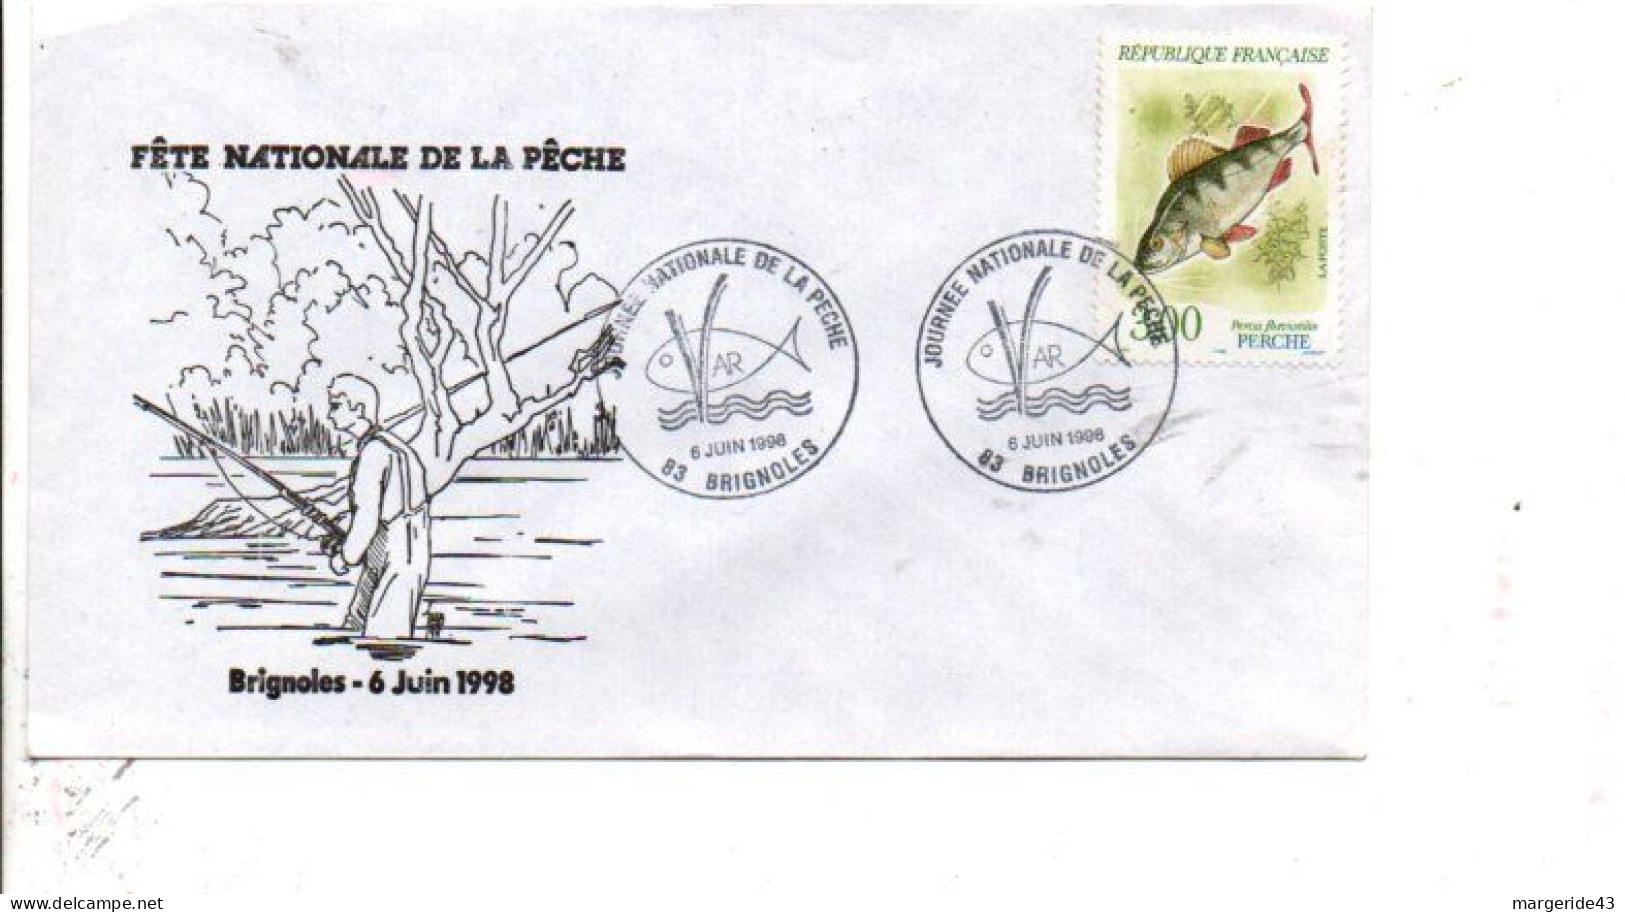 JOURNEE NATIONALE DE LA PECHE 1998 - Commemorative Postmarks